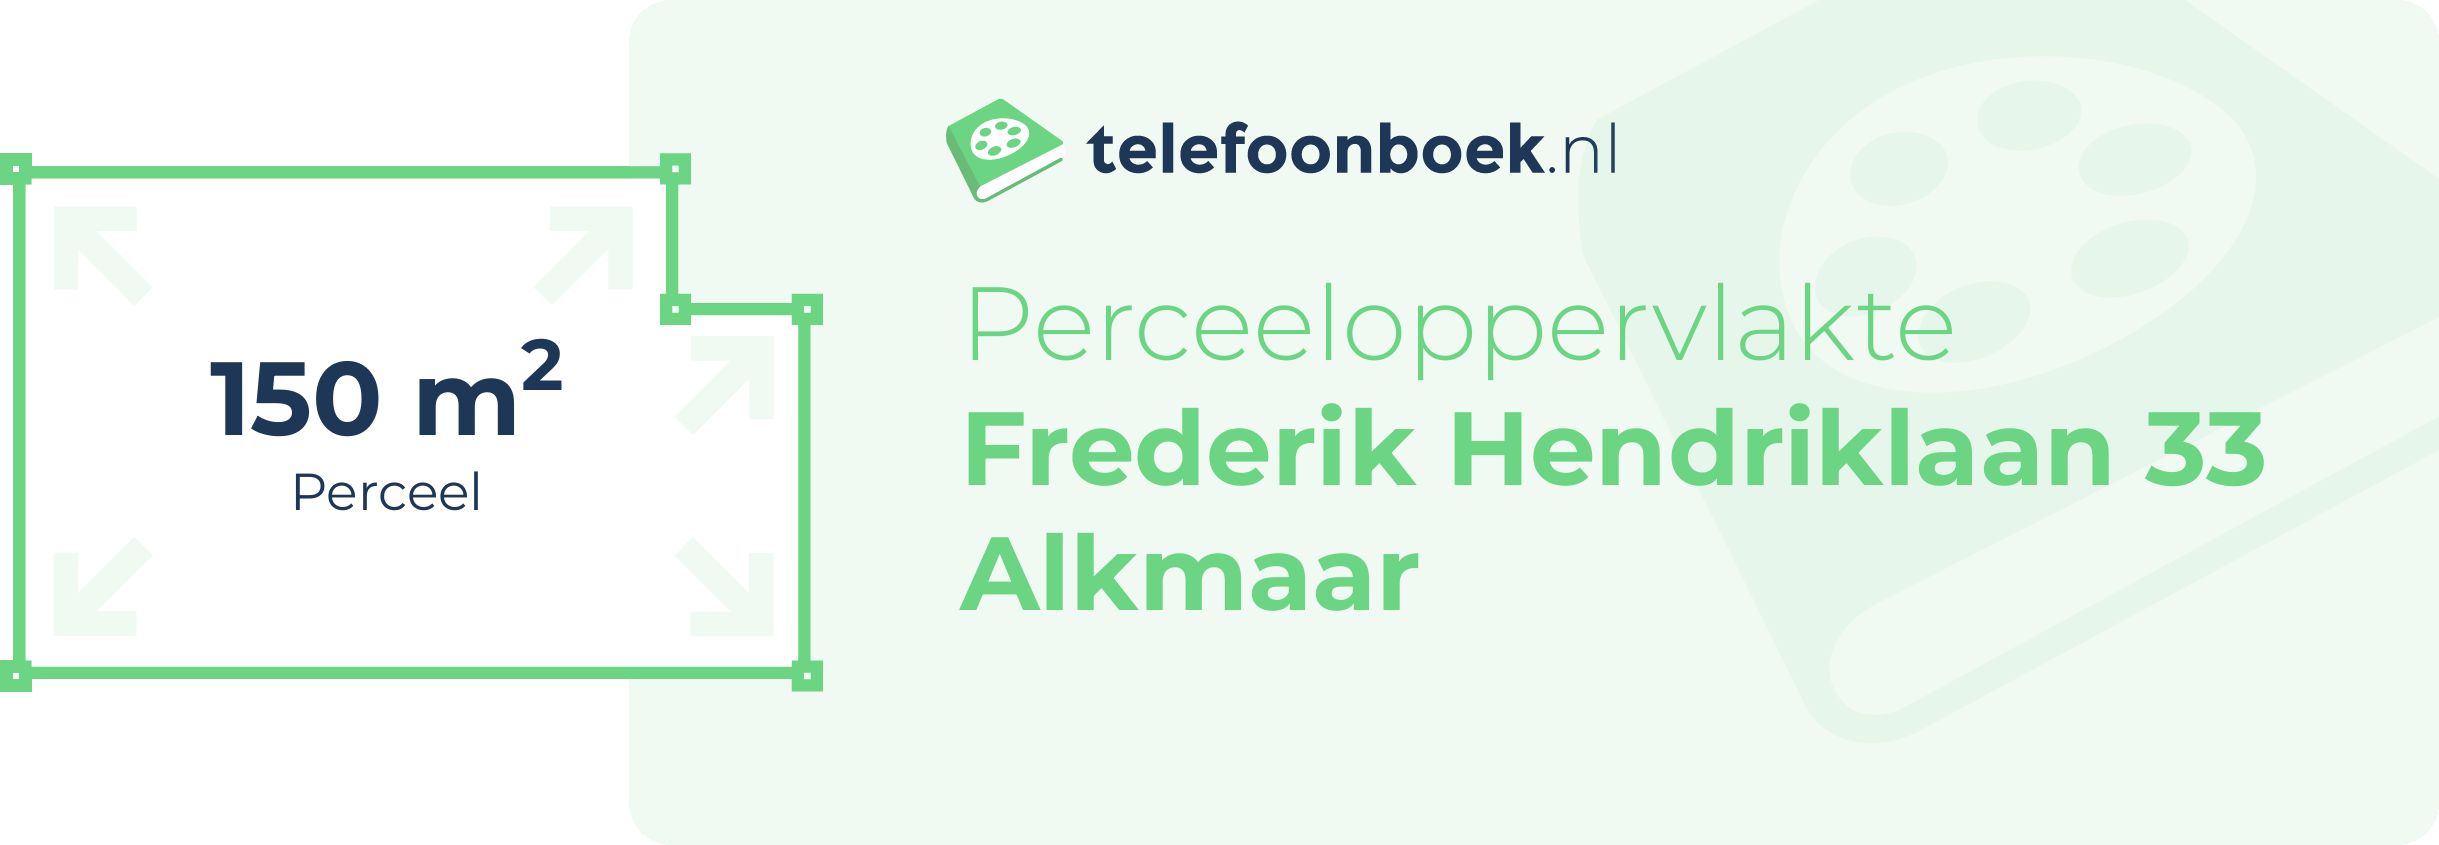 Perceeloppervlakte Frederik Hendriklaan 33 Alkmaar